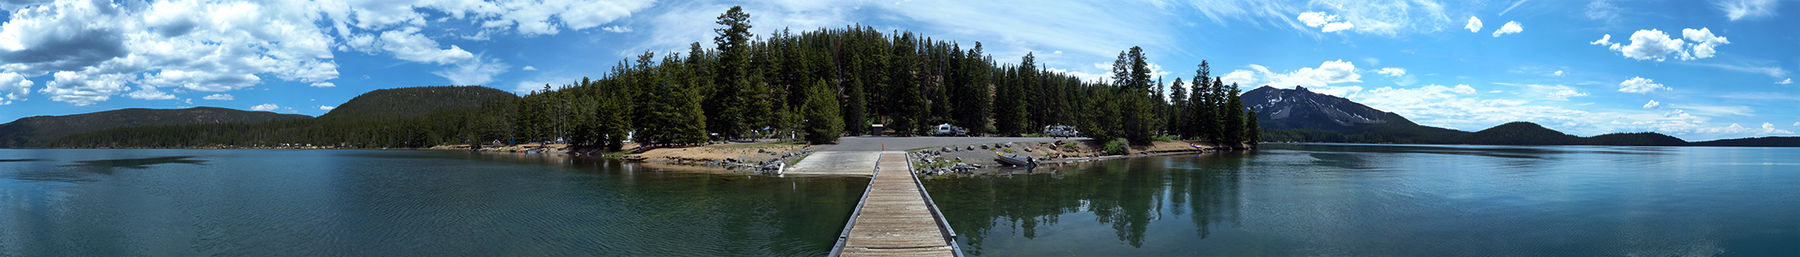 Paulina Lake in Newberry Caldera bij Lapine